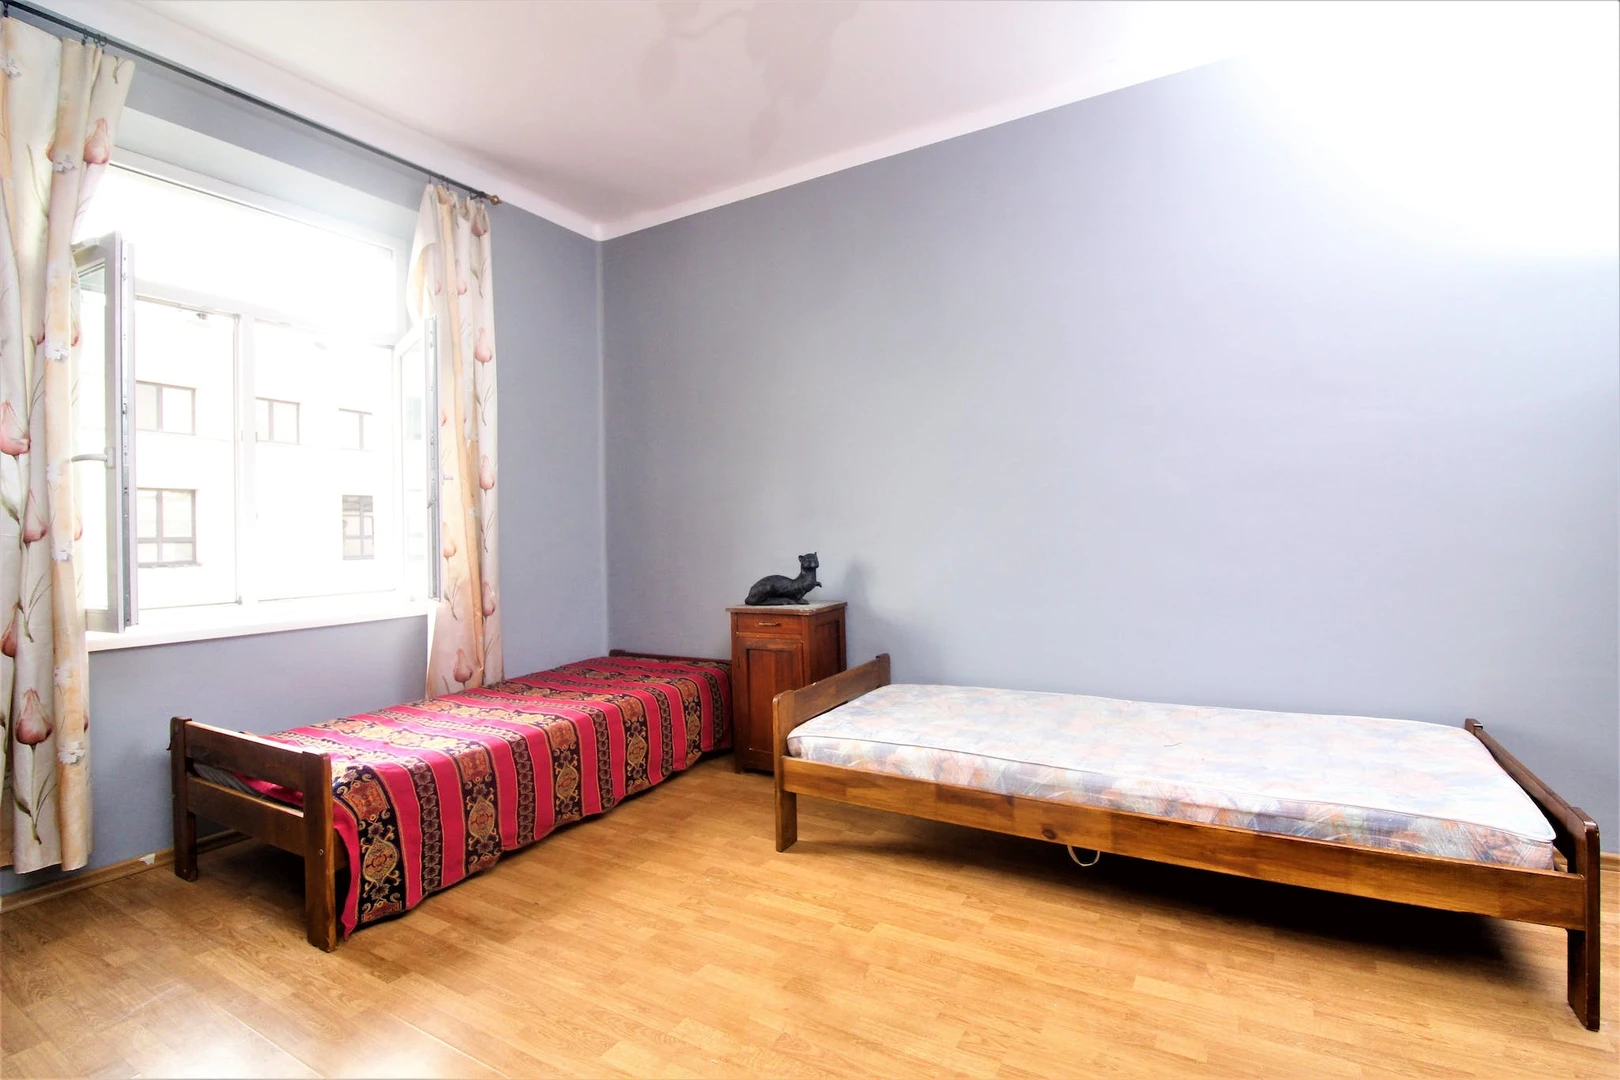 Alquiler de habitación en piso compartido en Cracovia